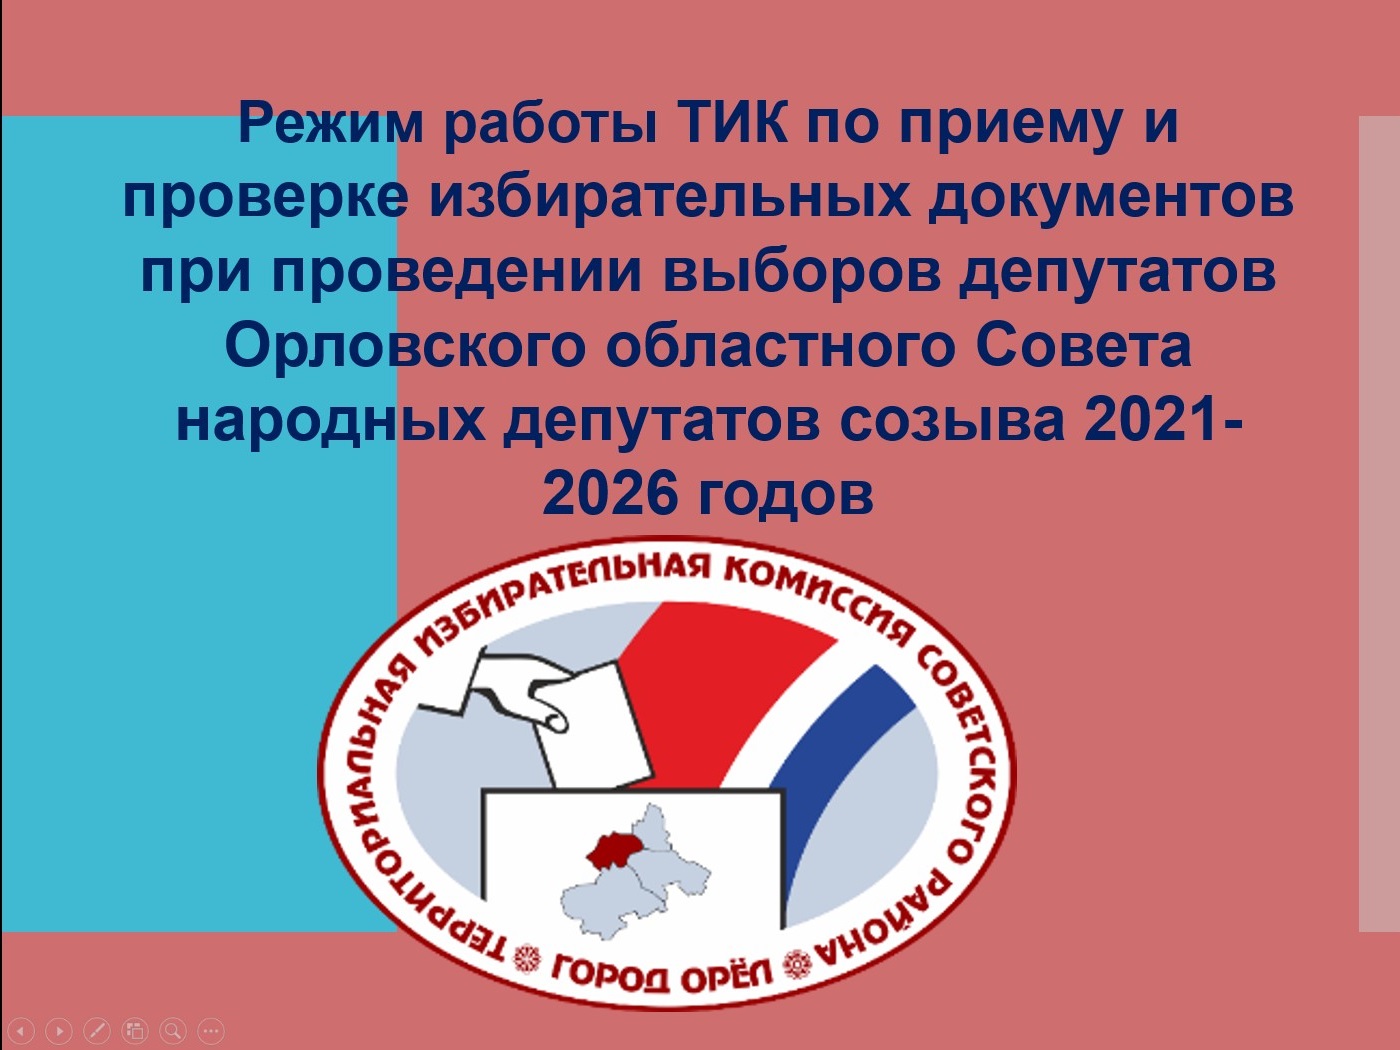 В Орловской области продолжается обучение избирательных комиссий 03.07.2021